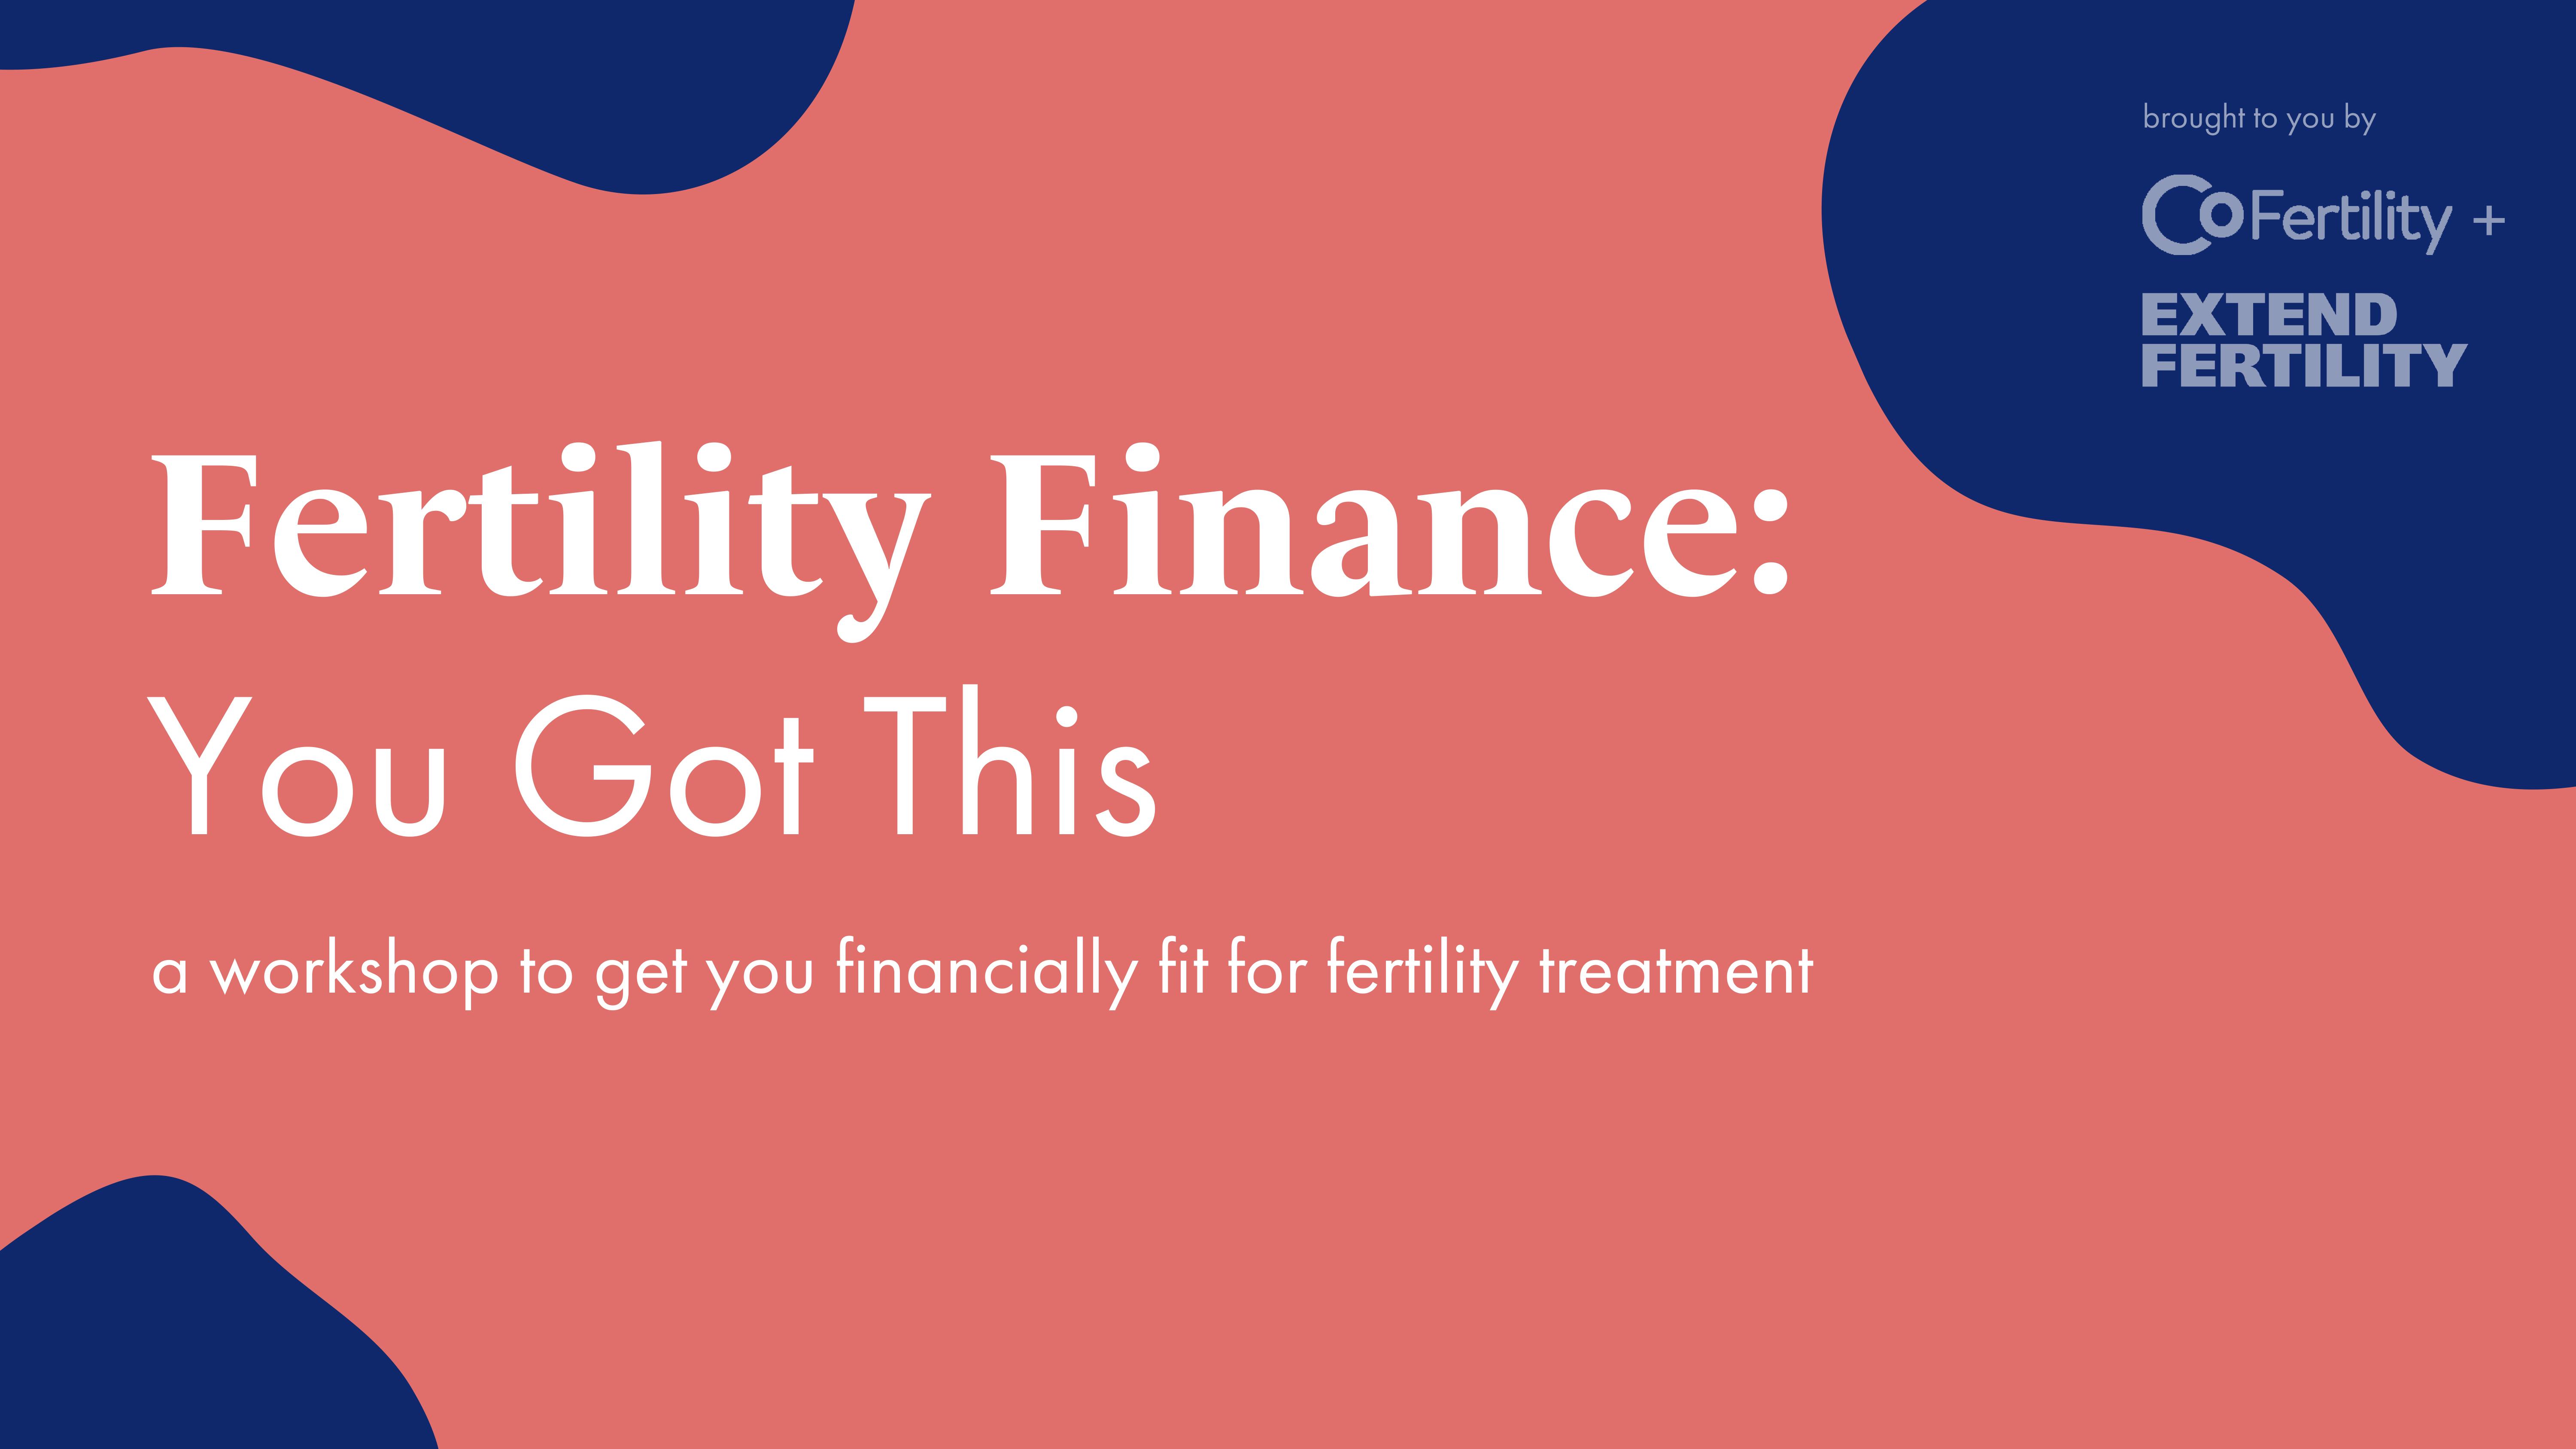 Fertility Finance: You Got This by Extend Fertility & CoFertility